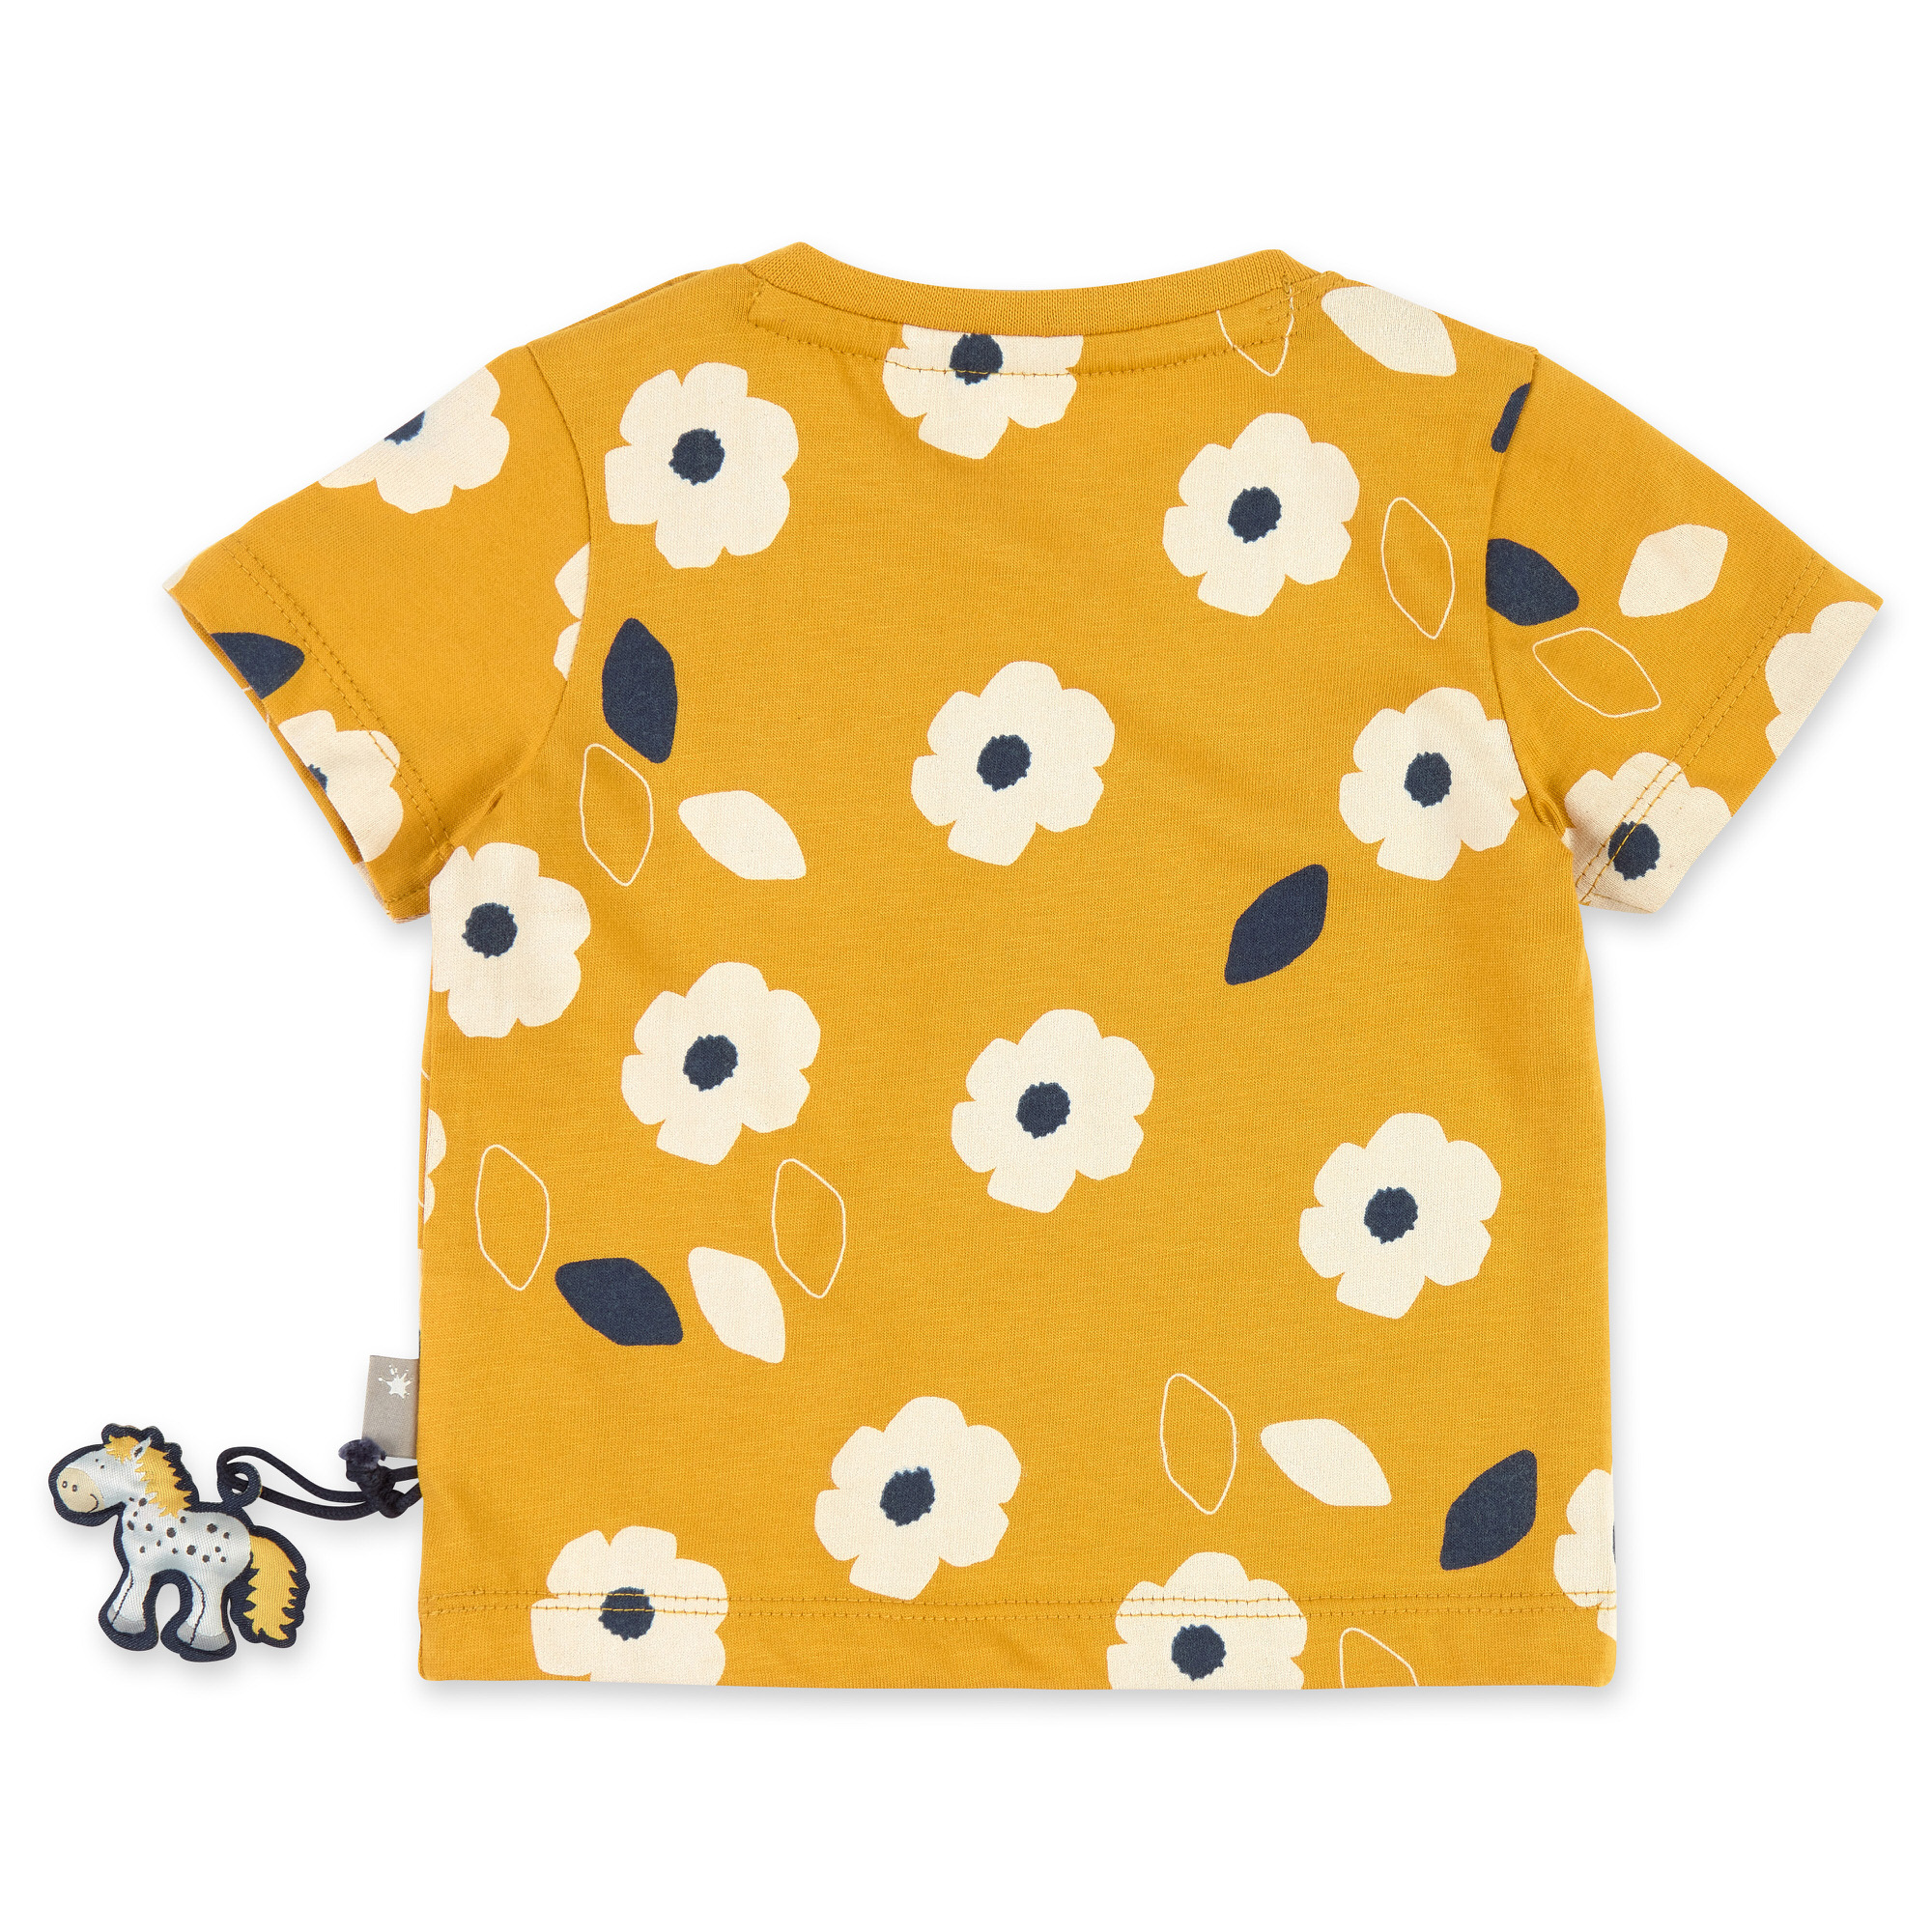 Honey yellow Baby T-shirt with flower print